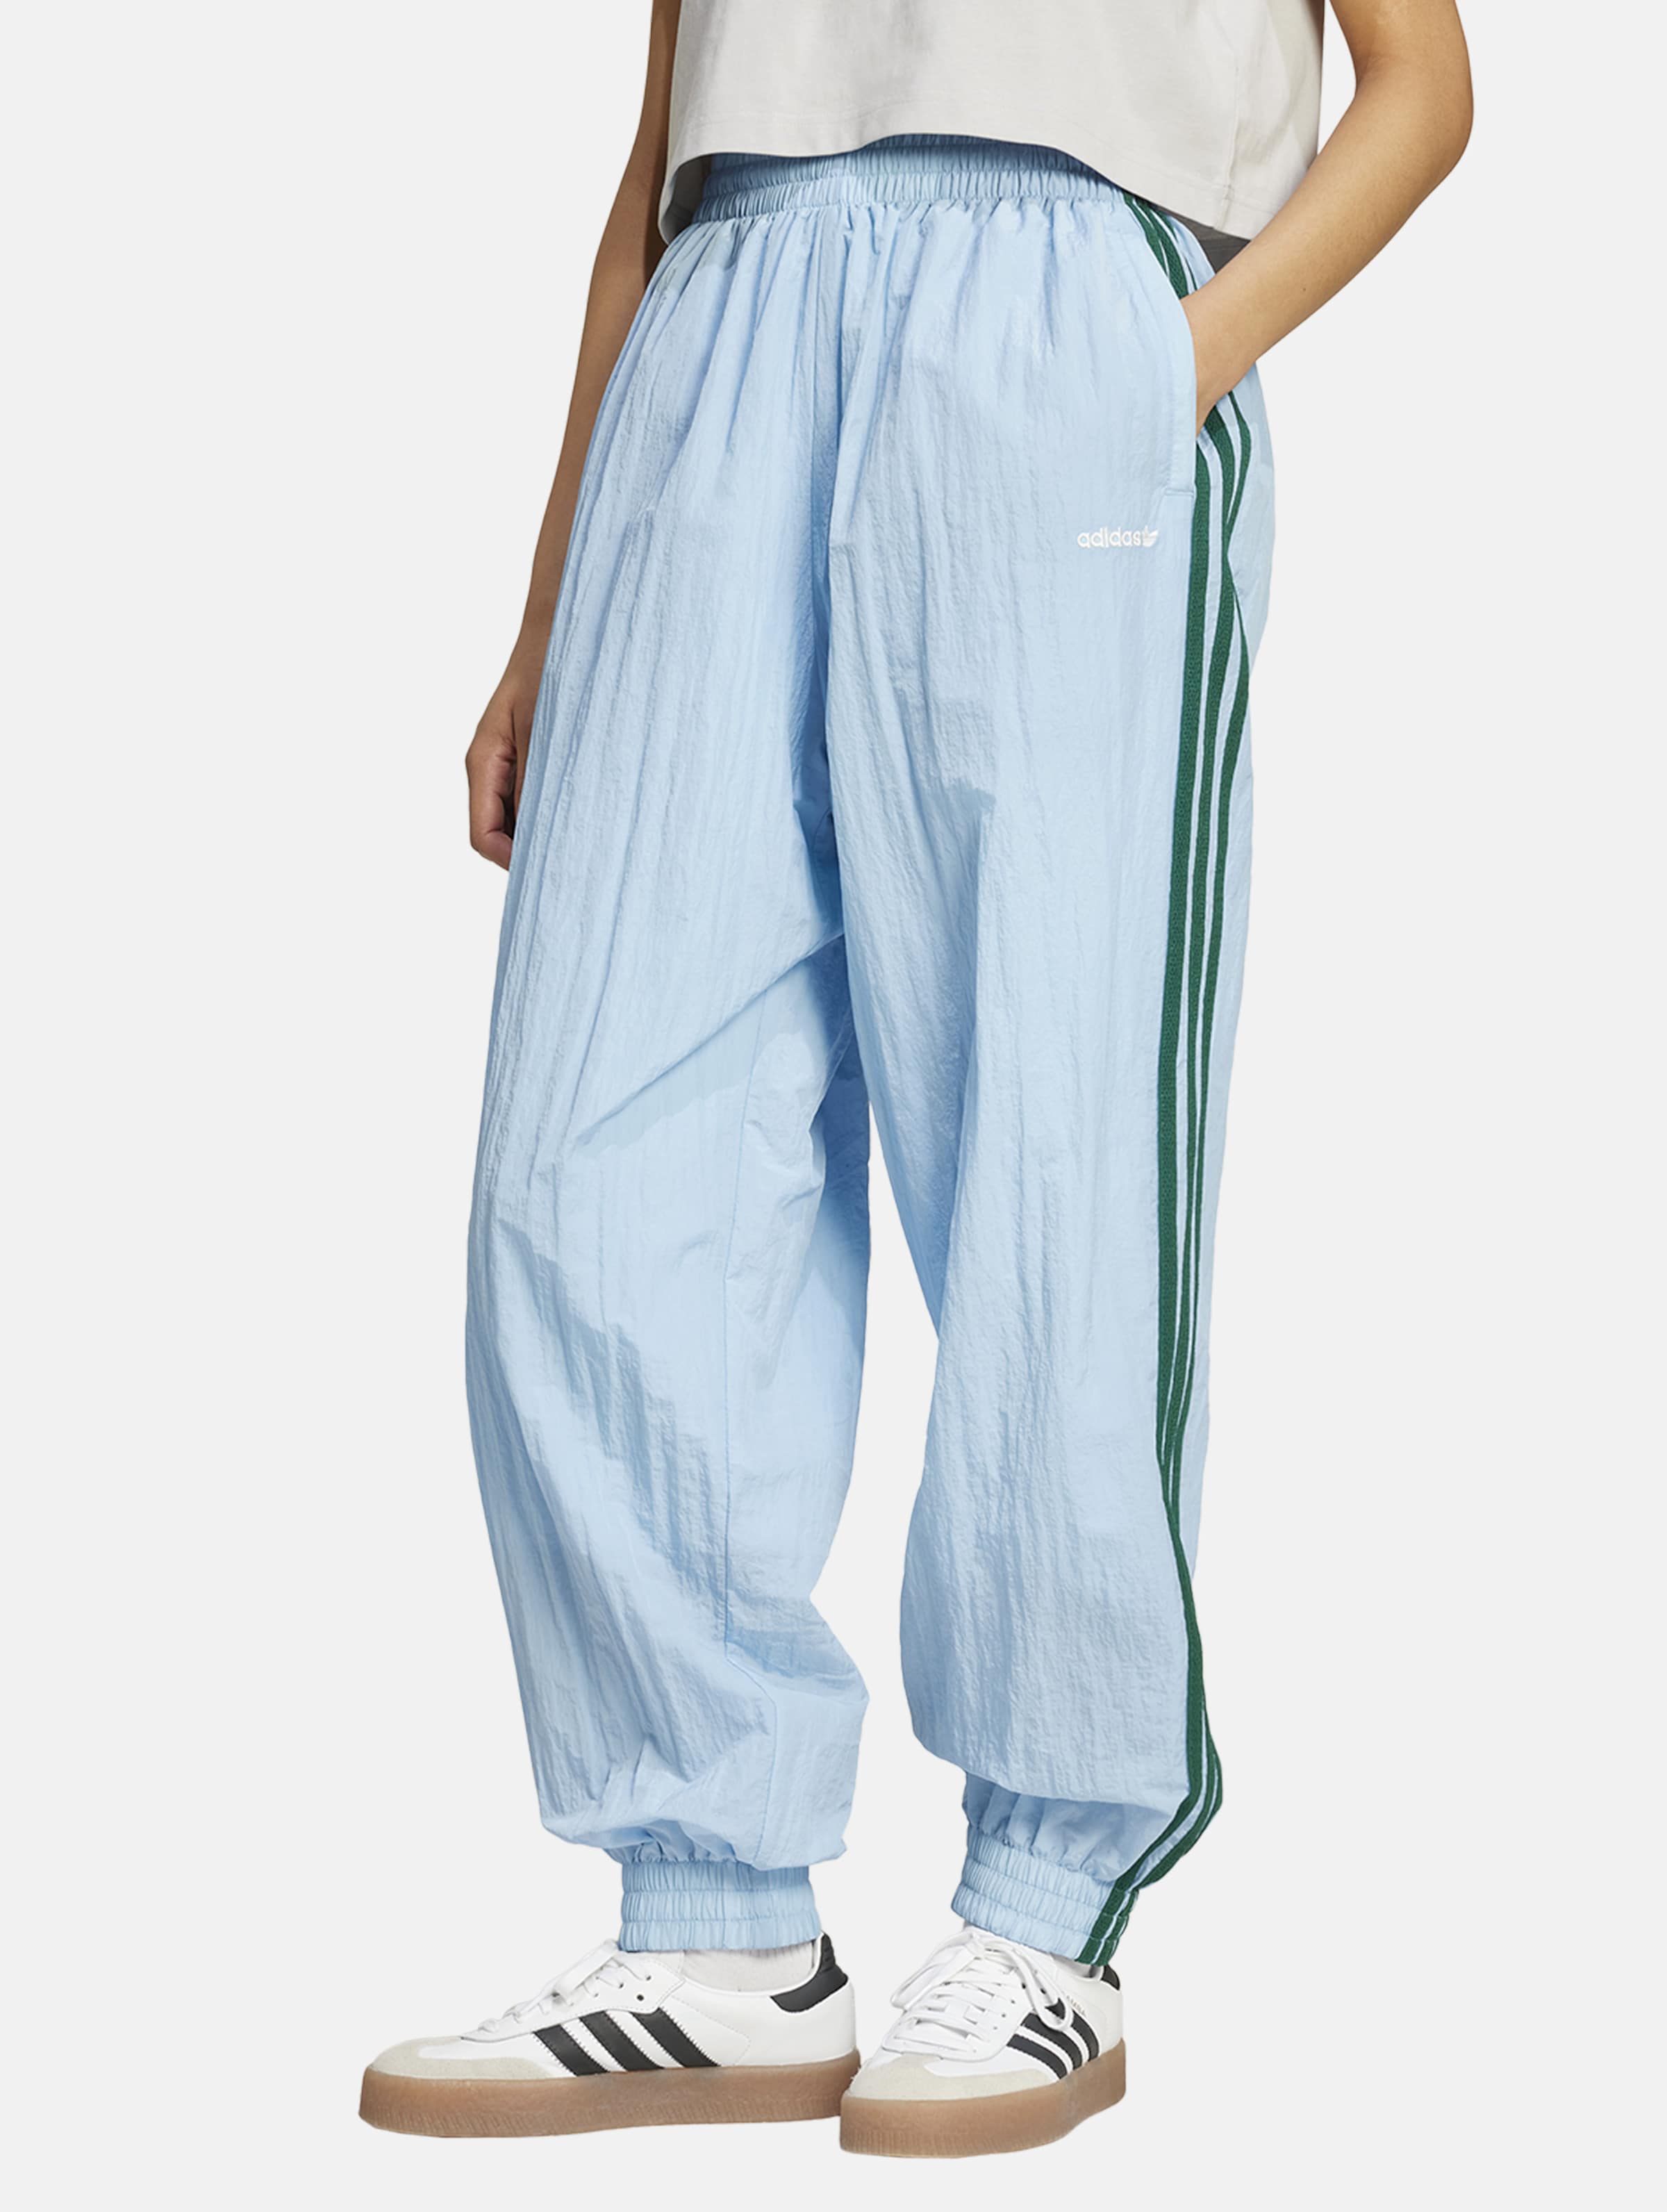 adidas Originals originals Jogginghosen Frauen,Unisex op kleur blauw, Maat S